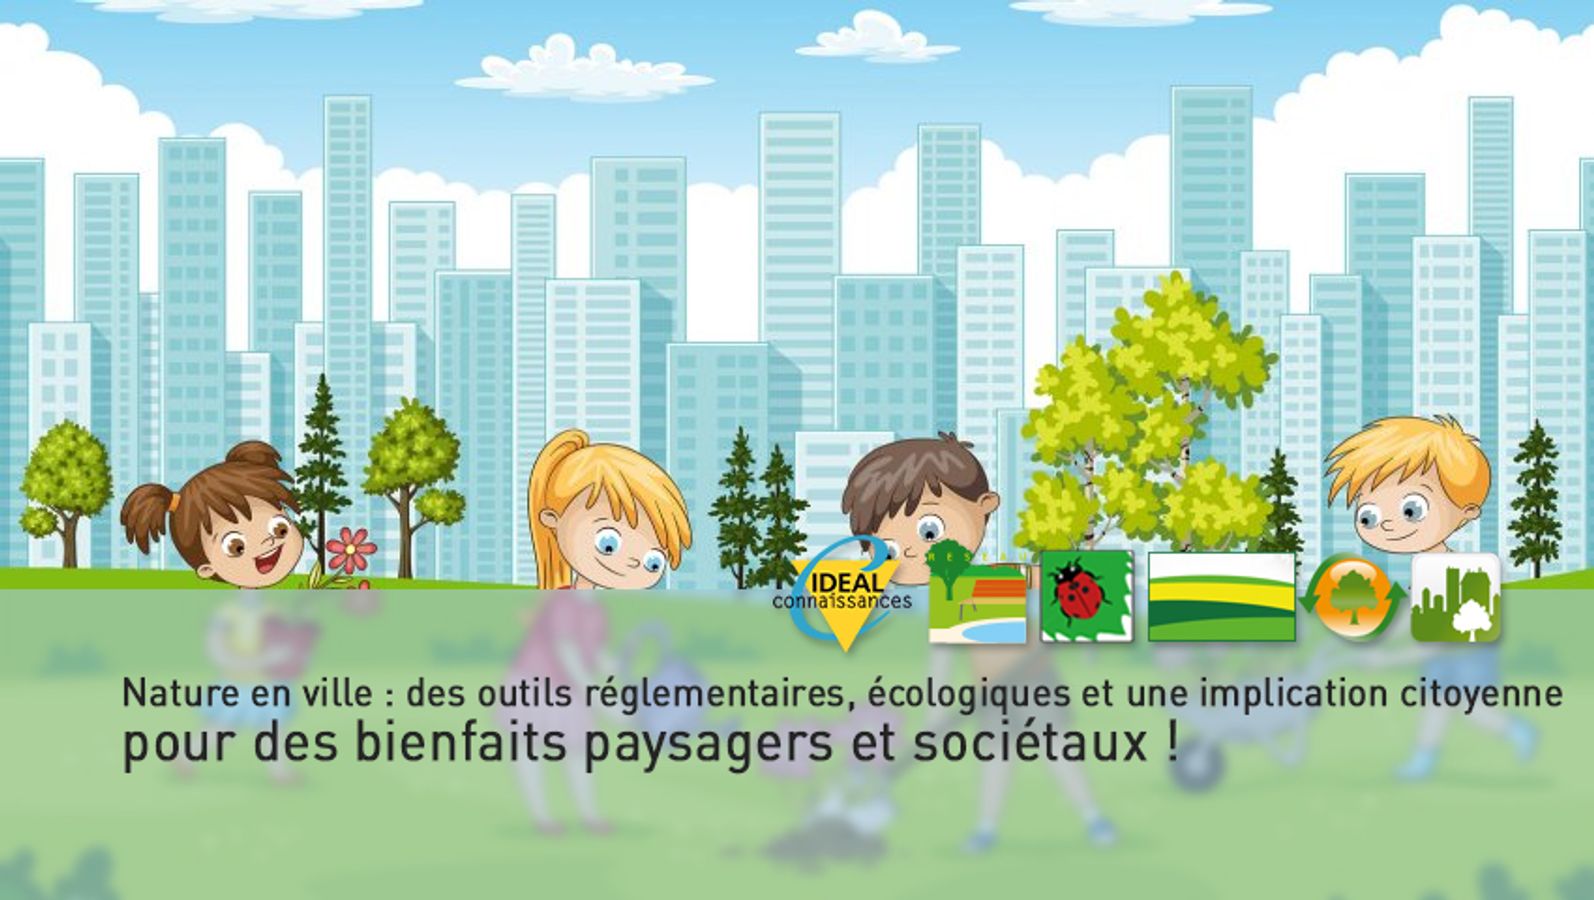 Nature en ville : des outils réglementaires, écologiques et une implication citoyenne pour des bienfaits paysagers et sociétaux !